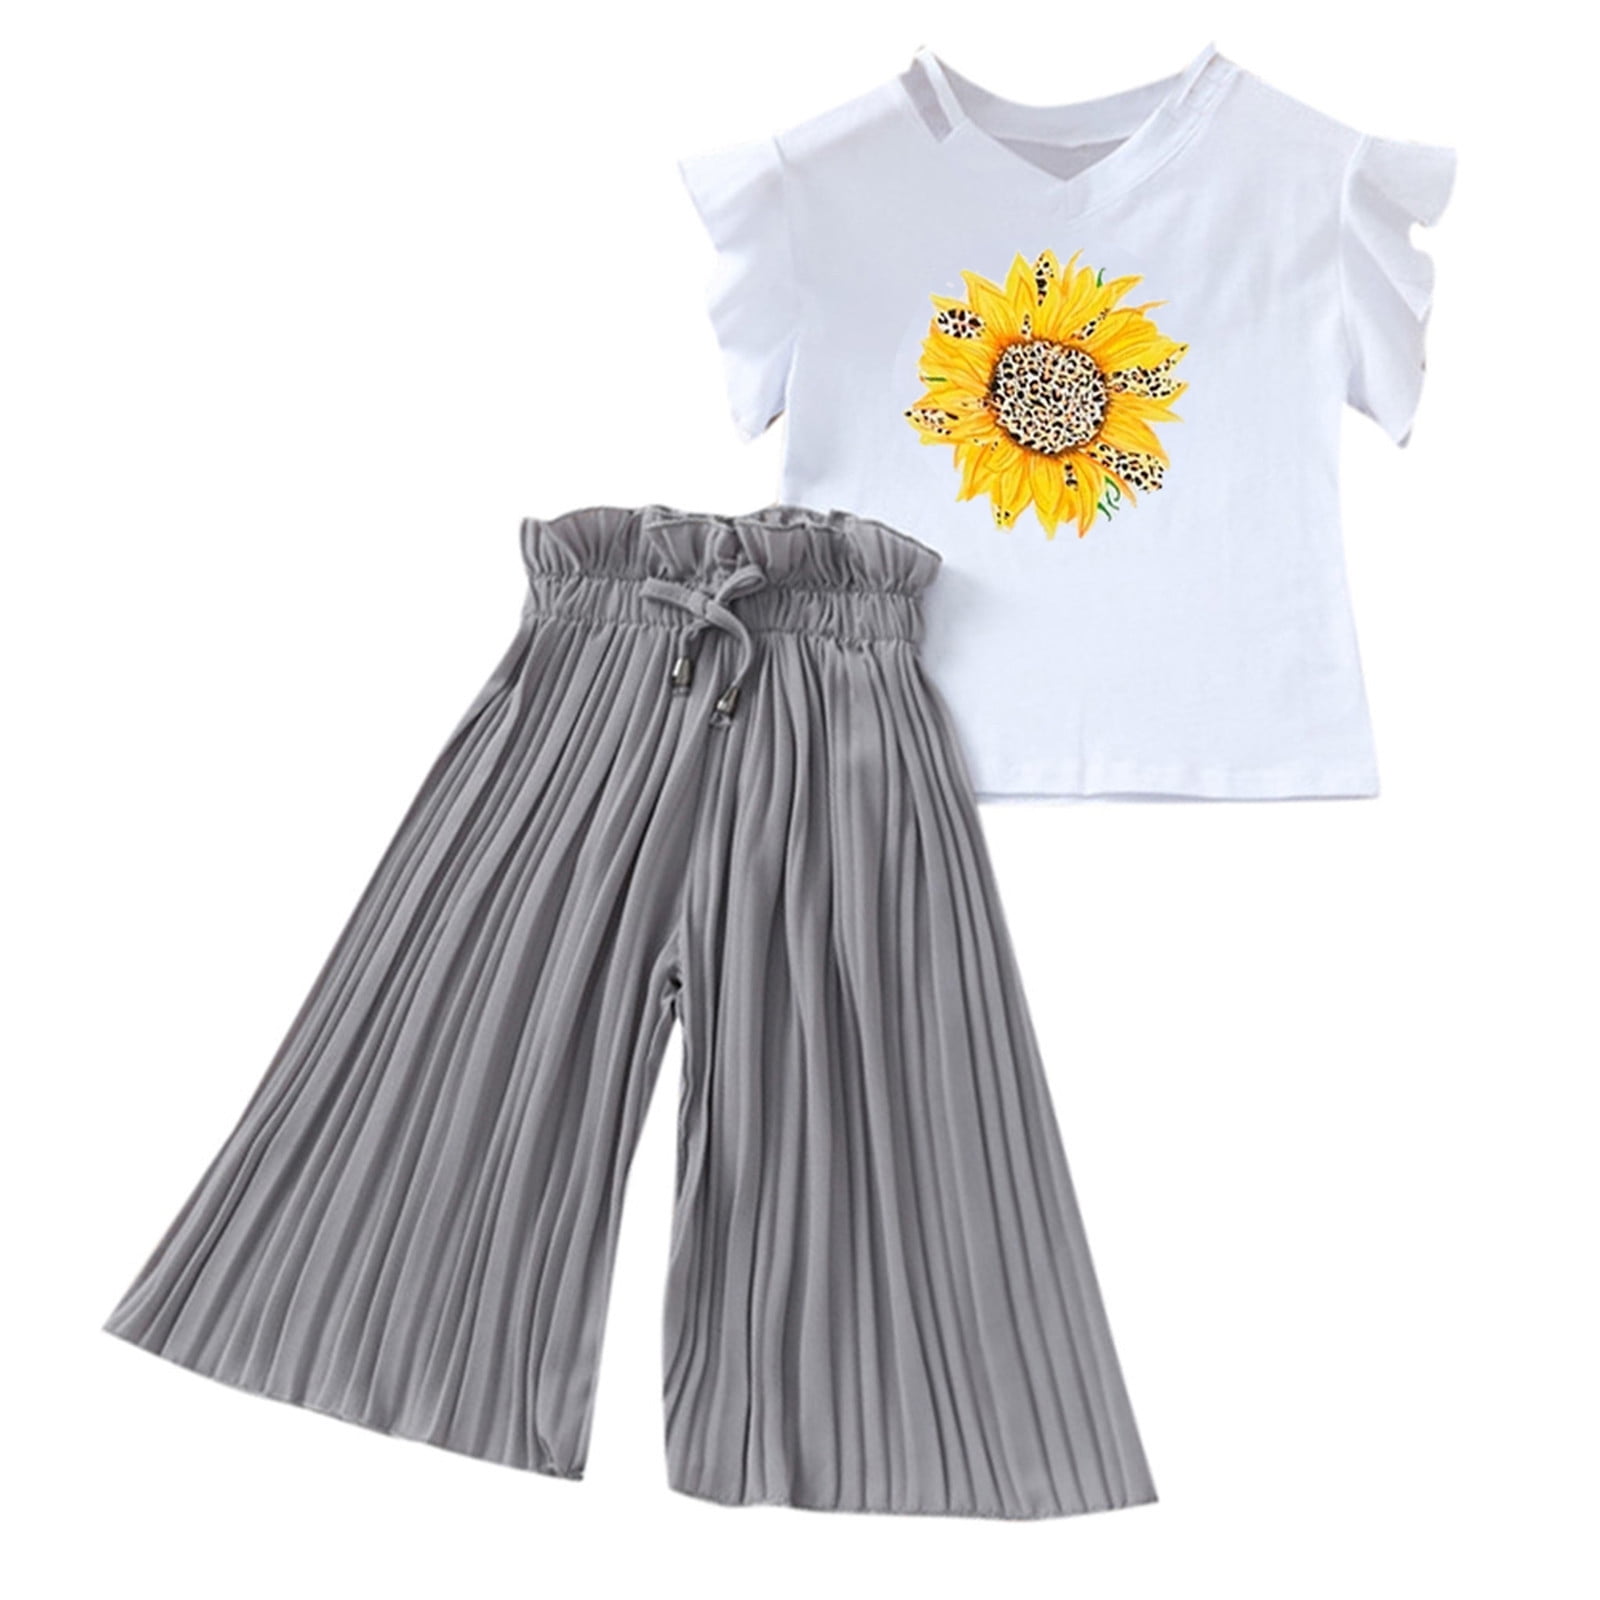 Toddler Kids Girls Clothing Sets Summer Sunflower T Shirt Tops Chiffon ...